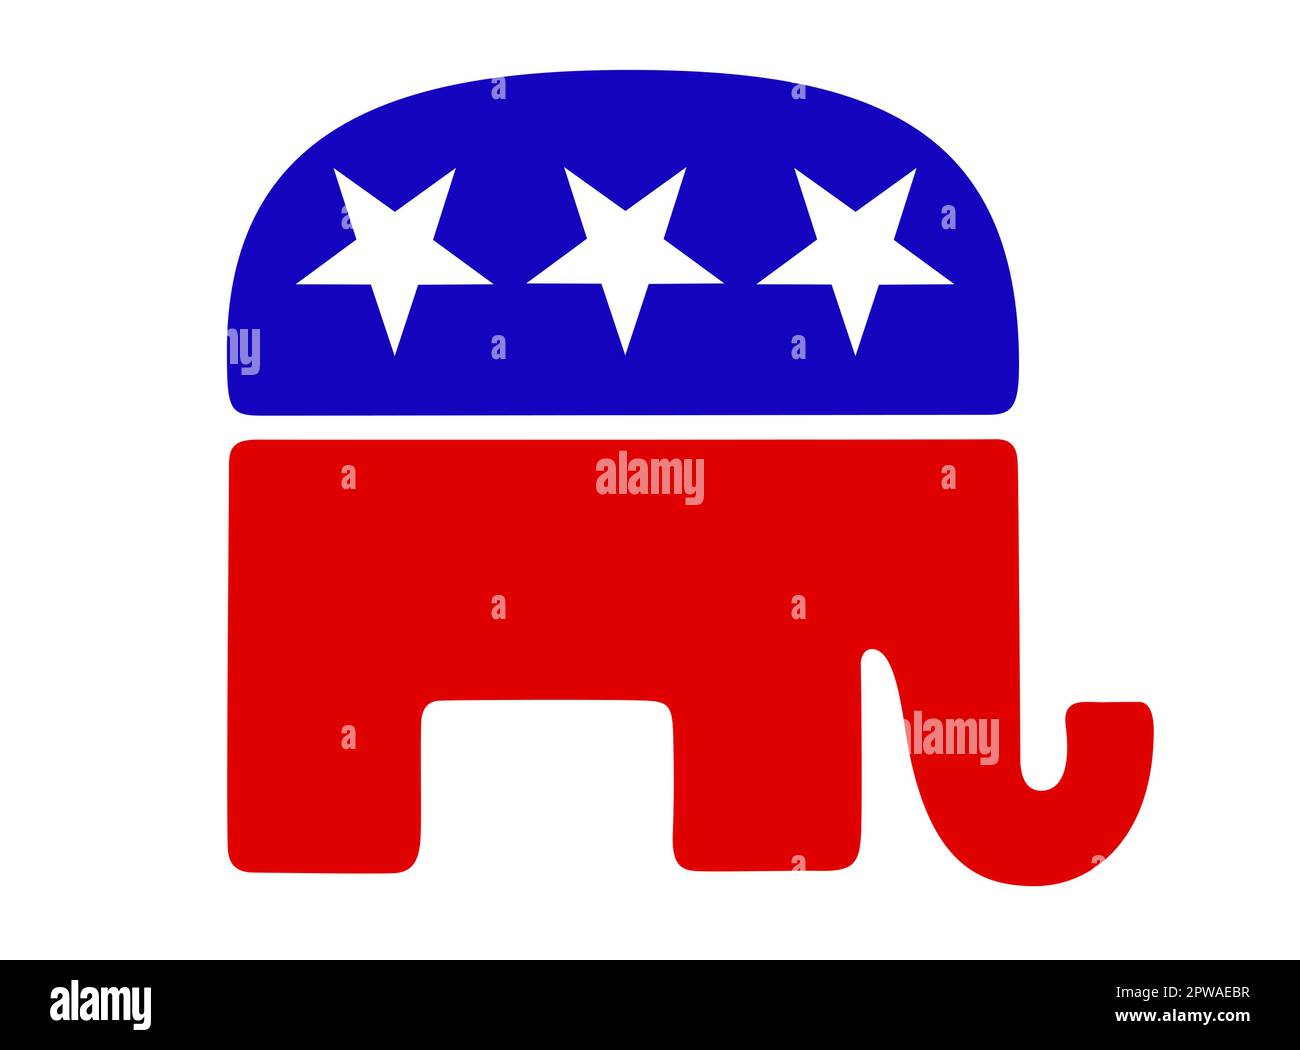 Republikanische Partei der Vereinigten Staaten Stockfoto